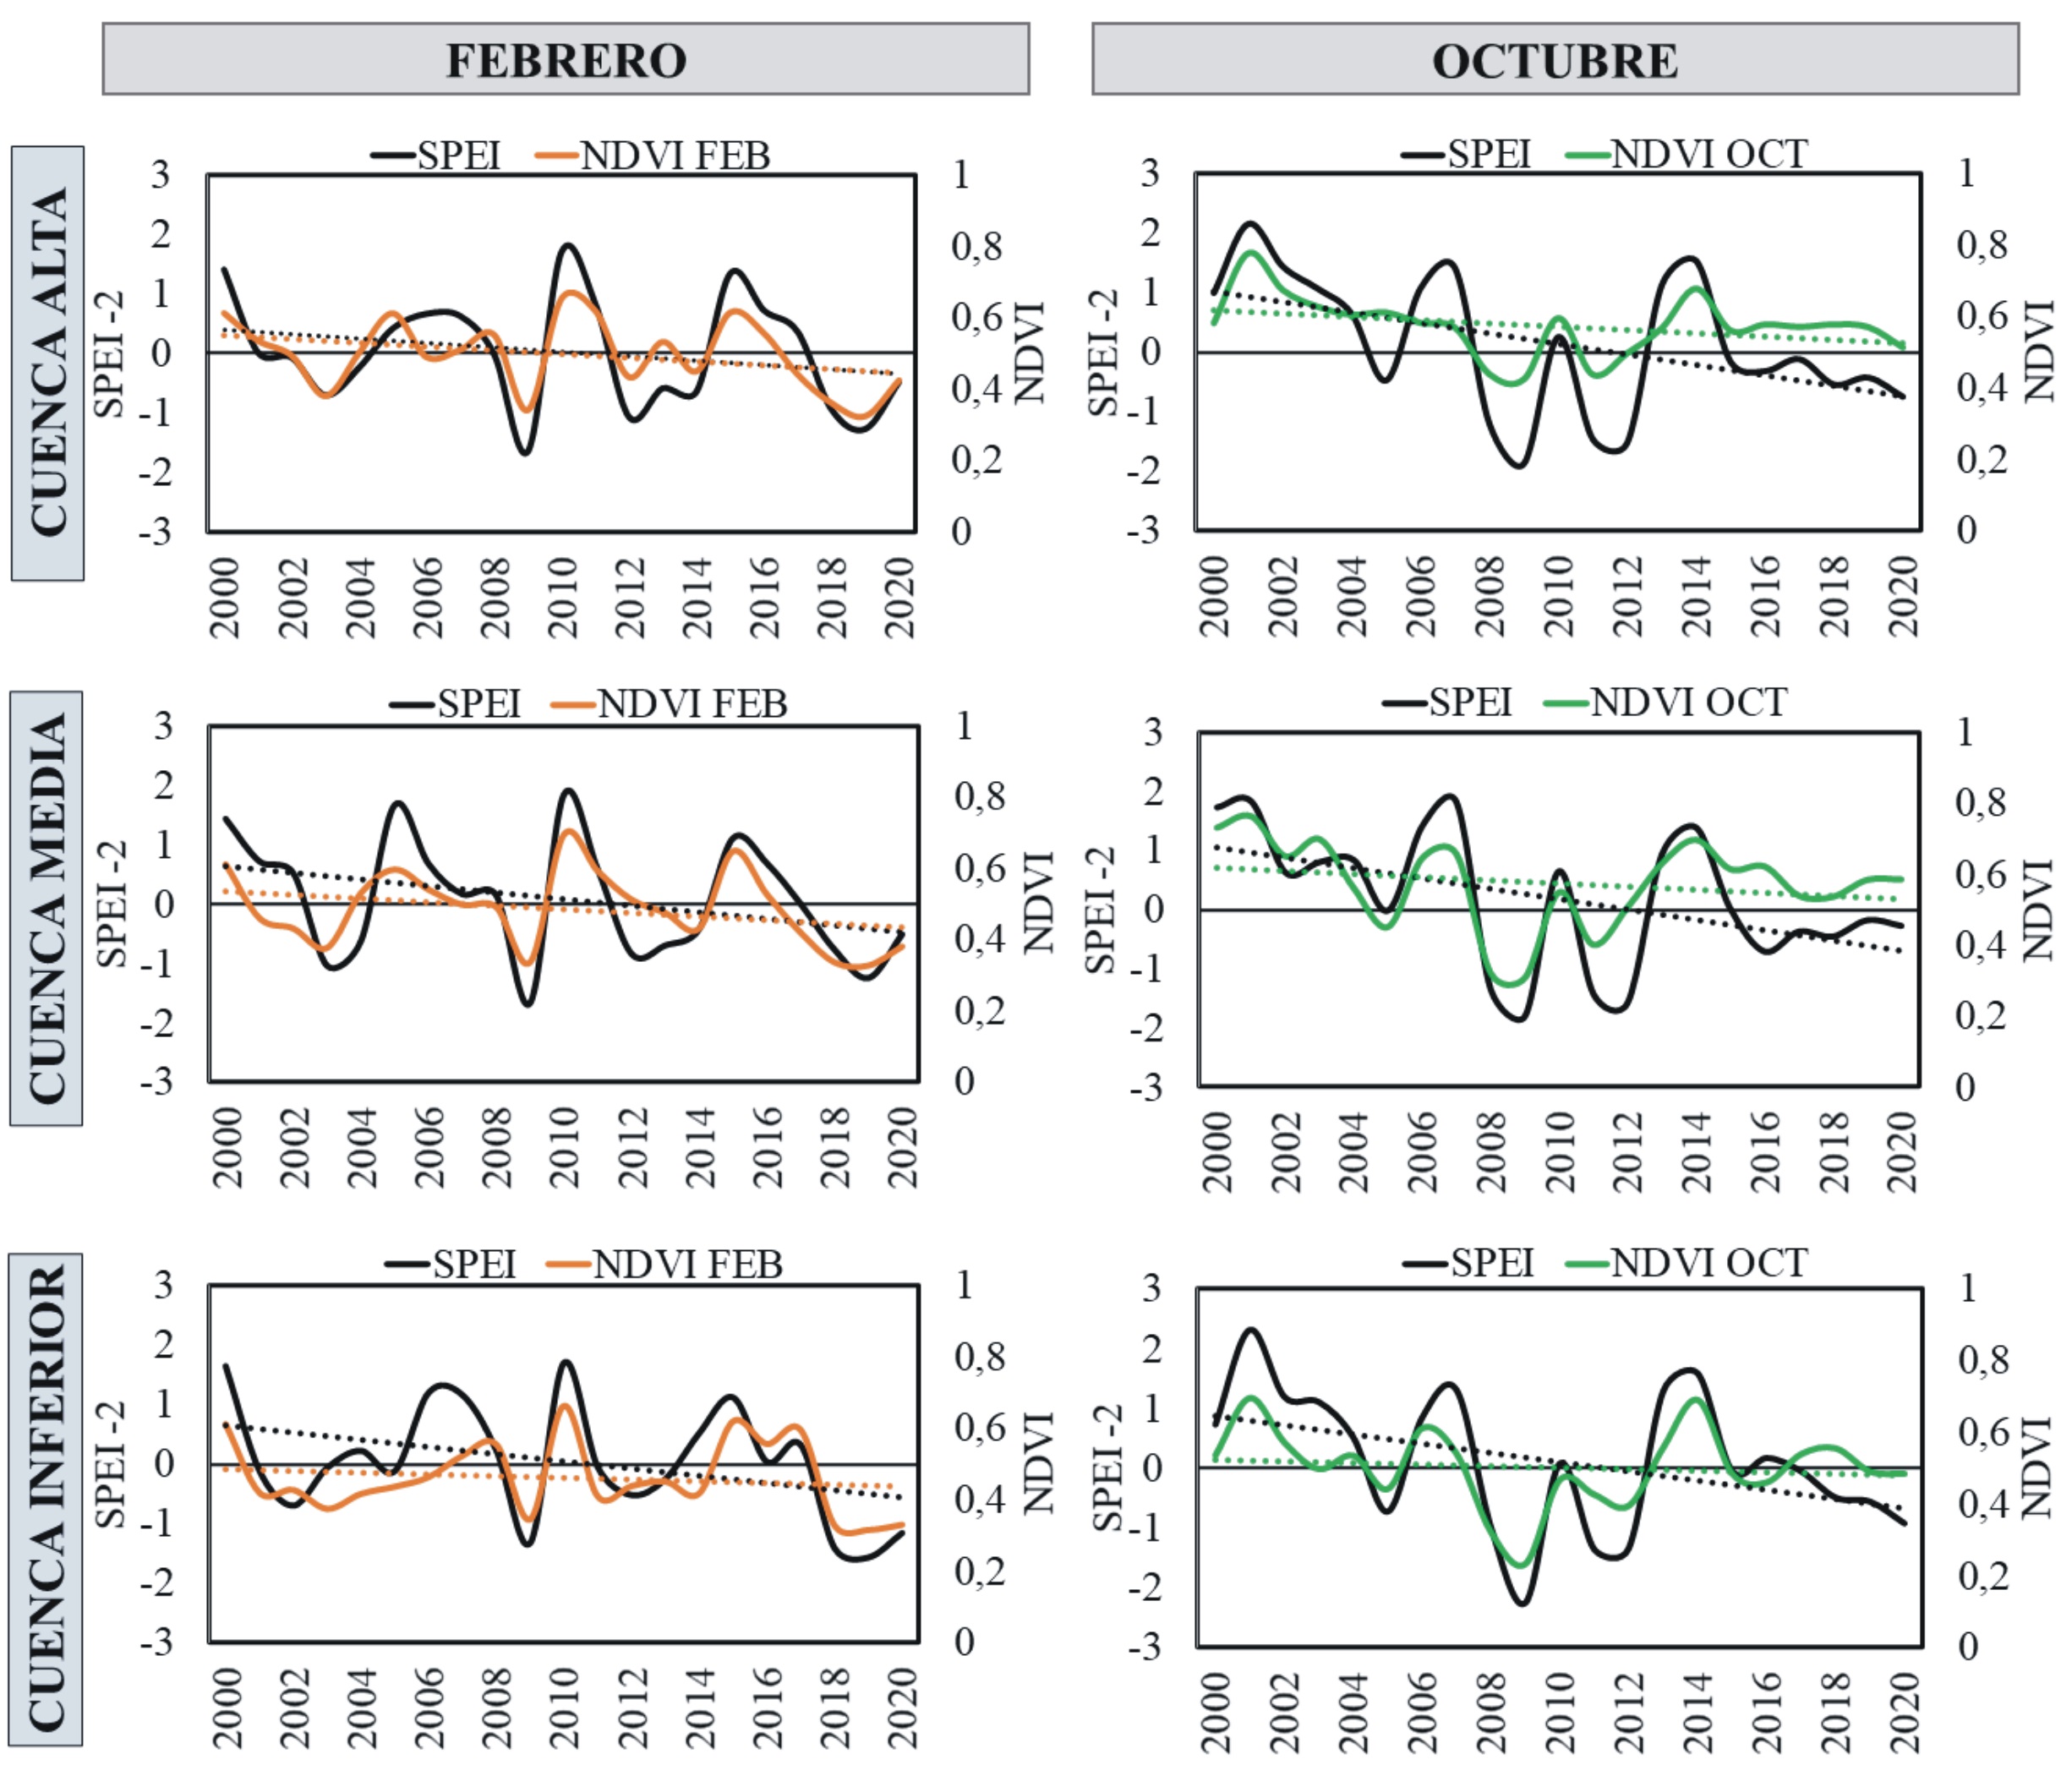 Evolución y tendencia del SPEI-2 y el NDVI de febrero y octubre durante
el período 2000-2020 en la cuenca del río Sauce Grande.